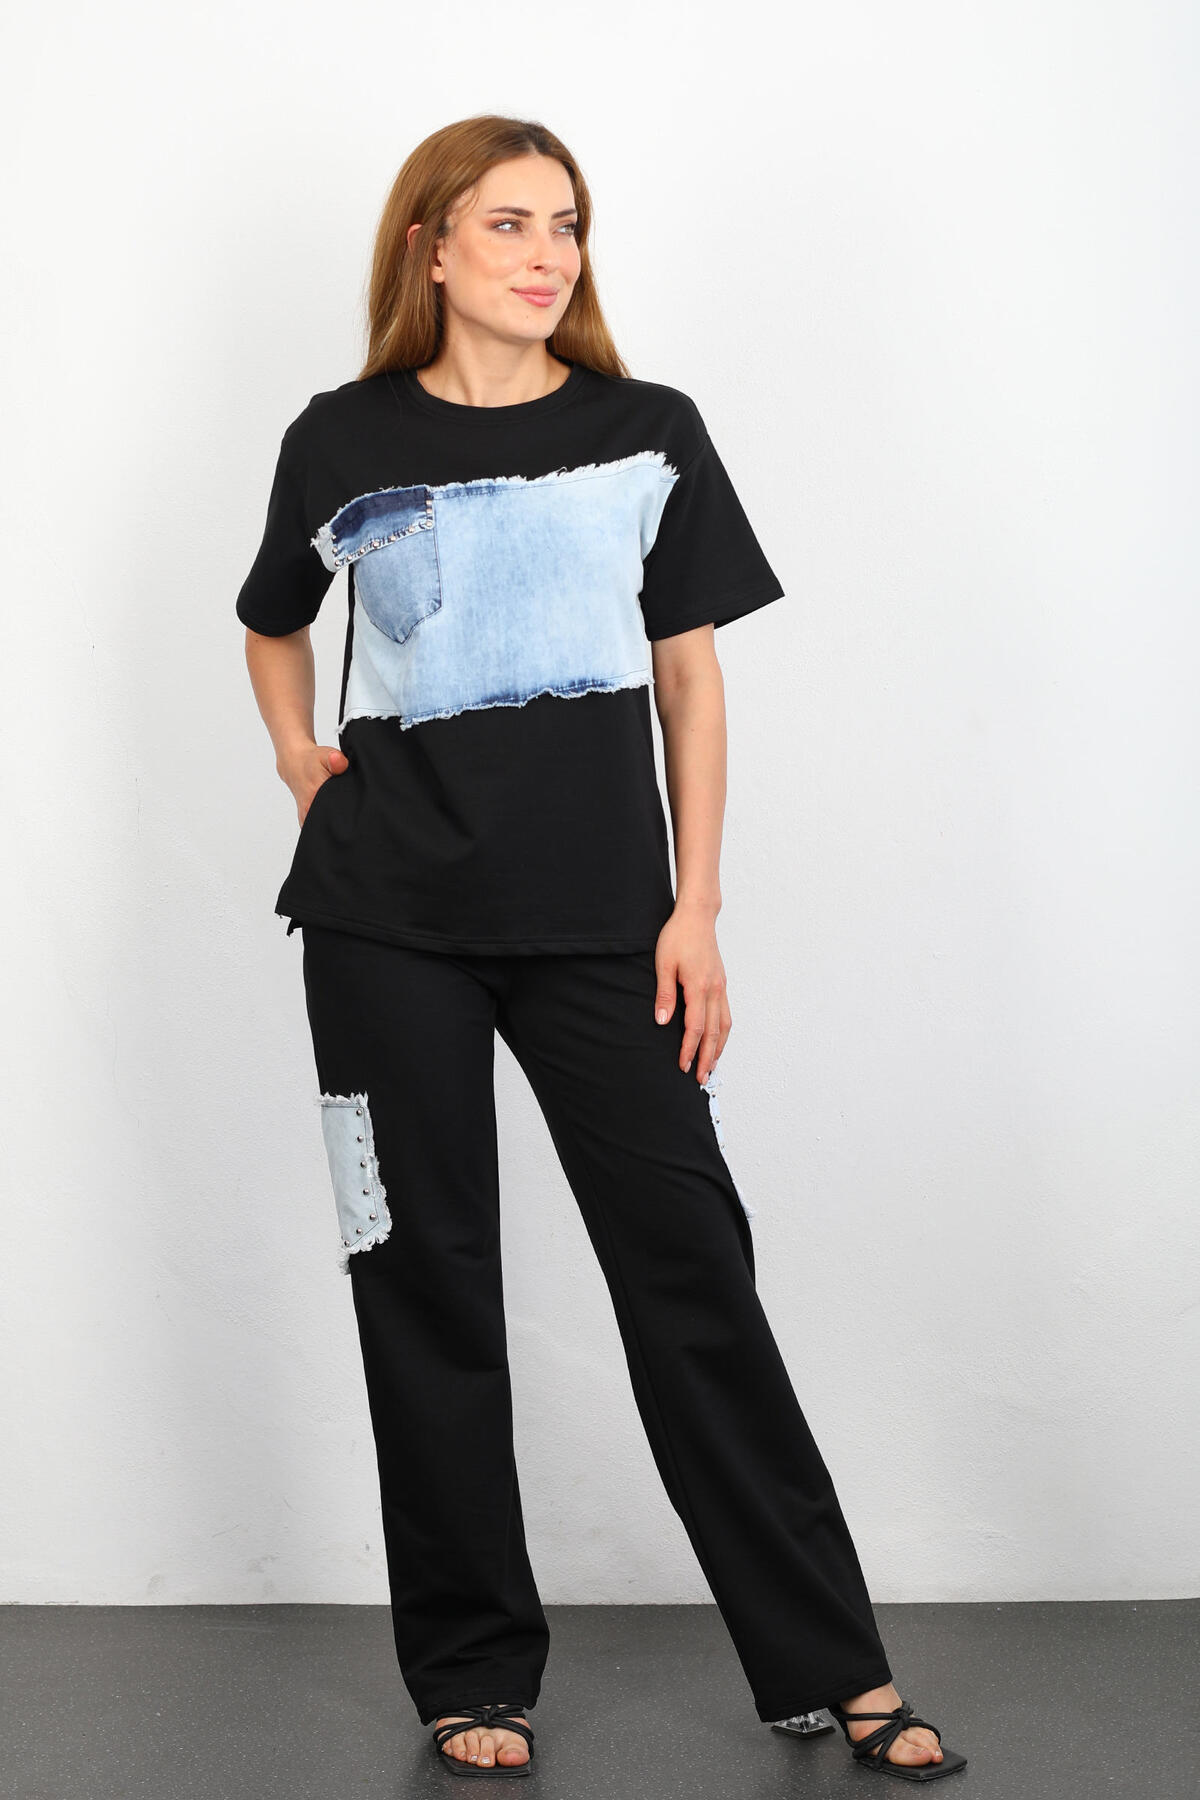 Berox - Jean Parçalı Yan Yırtmaçlı Bol Paça Siyah Kadın T-shirt-Pantolon Takım